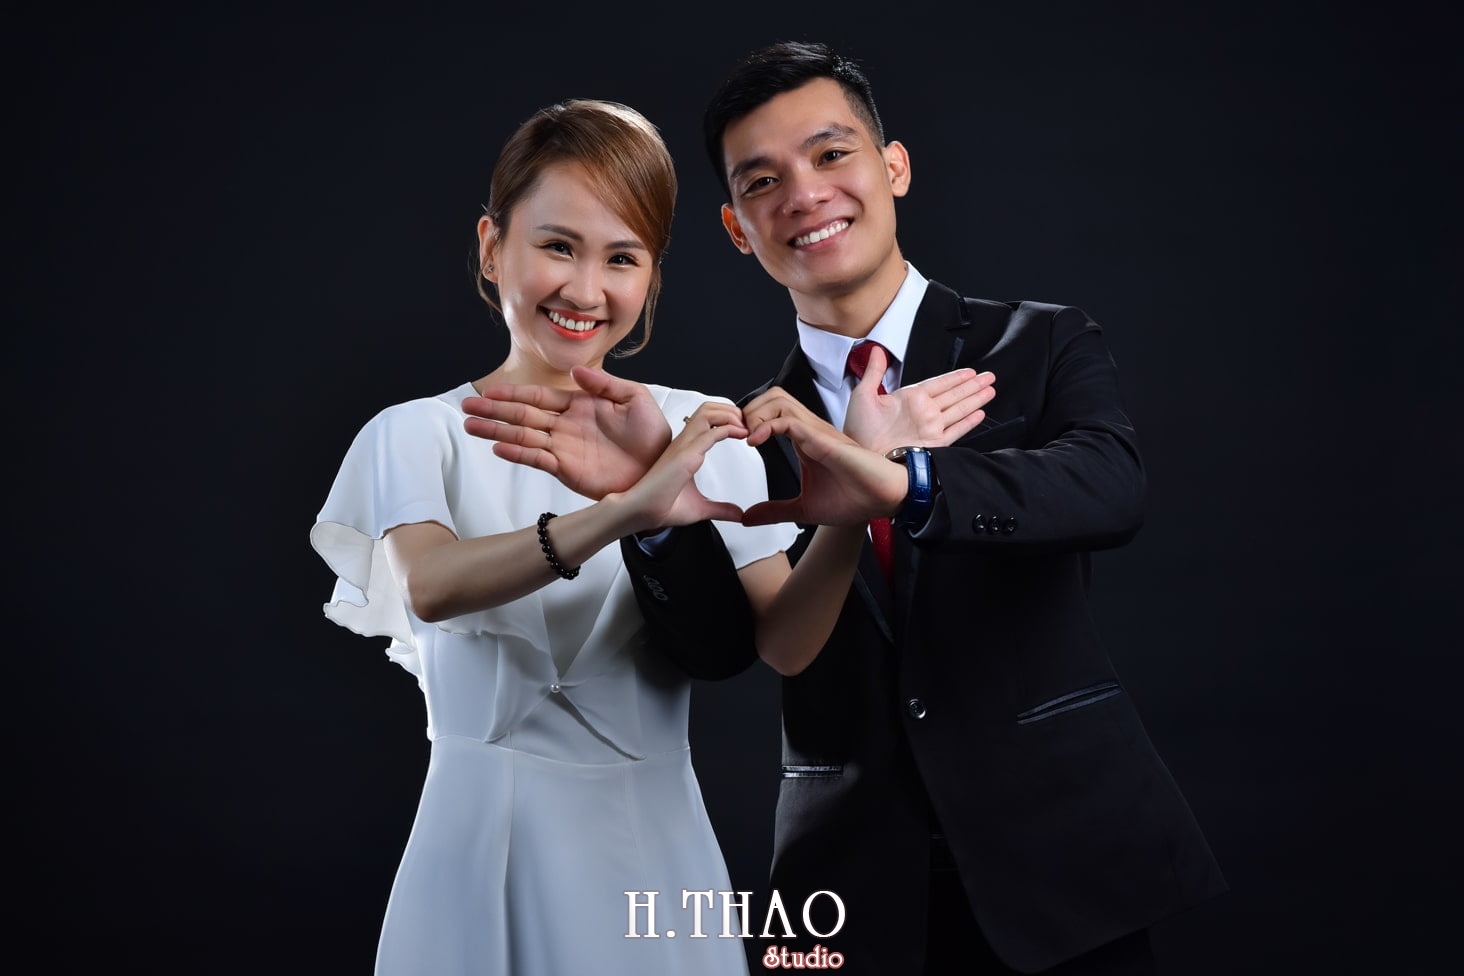 Anh couple 5 min - 3 concept chụp ảnh với người yêu đẹp mà chất - HThao Studio